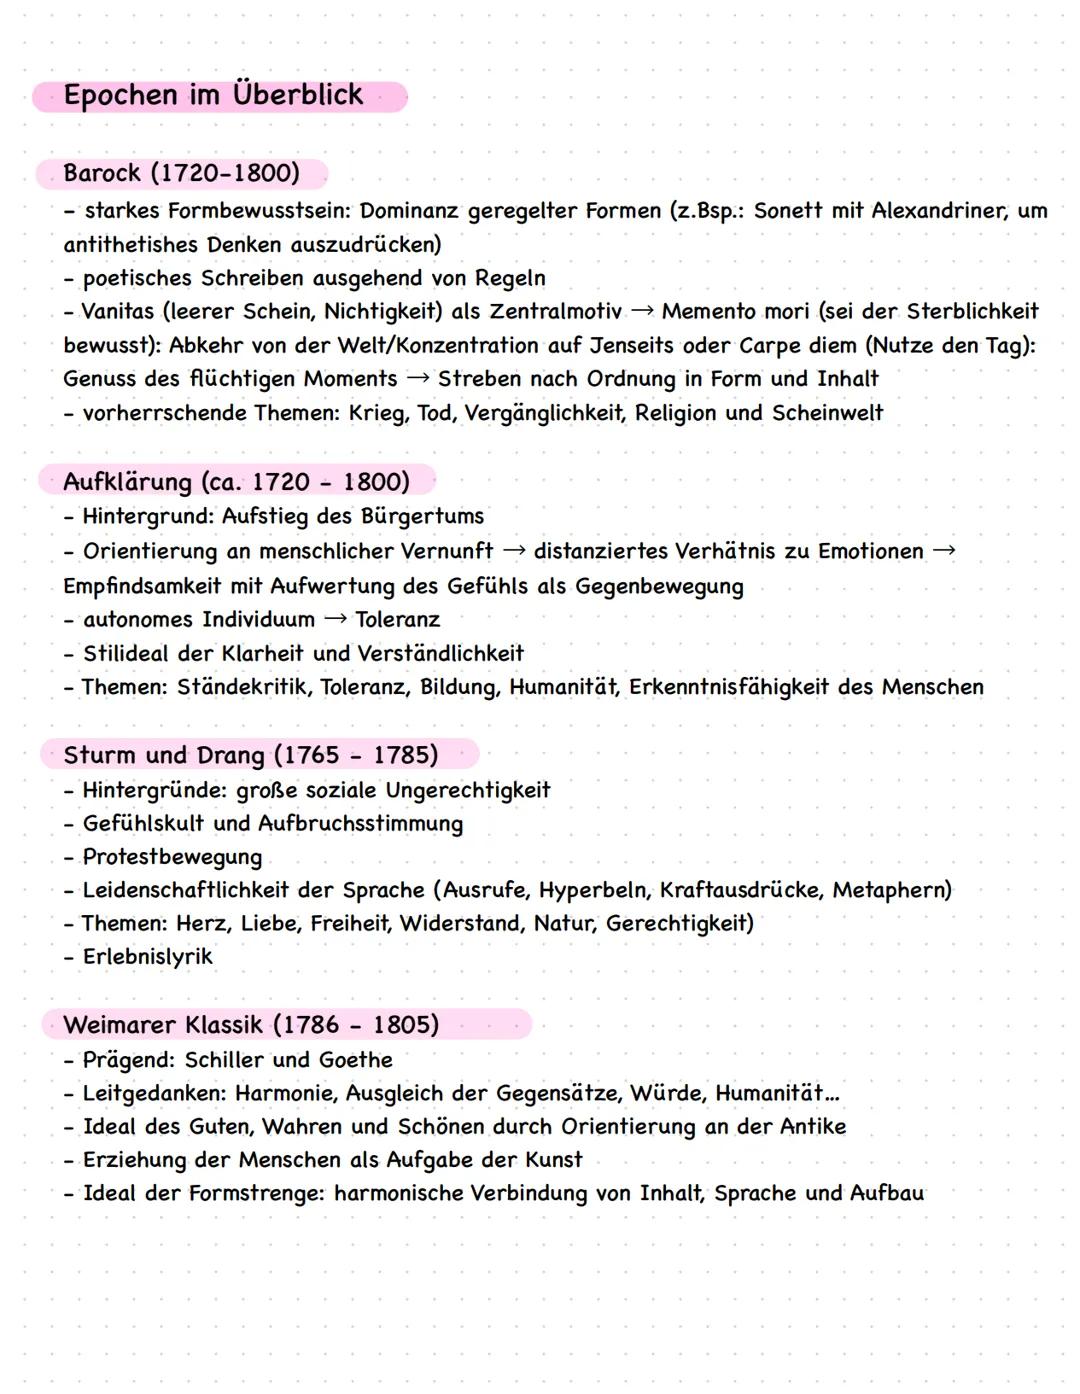 Dramenszenenanalyse
Lernzettel: Vorprüfung Deutsch
Einleitung:
Kreativer Einstieg mit Zitat
Titel, Autor, Thema, Textsorte
,,In dem vorliege